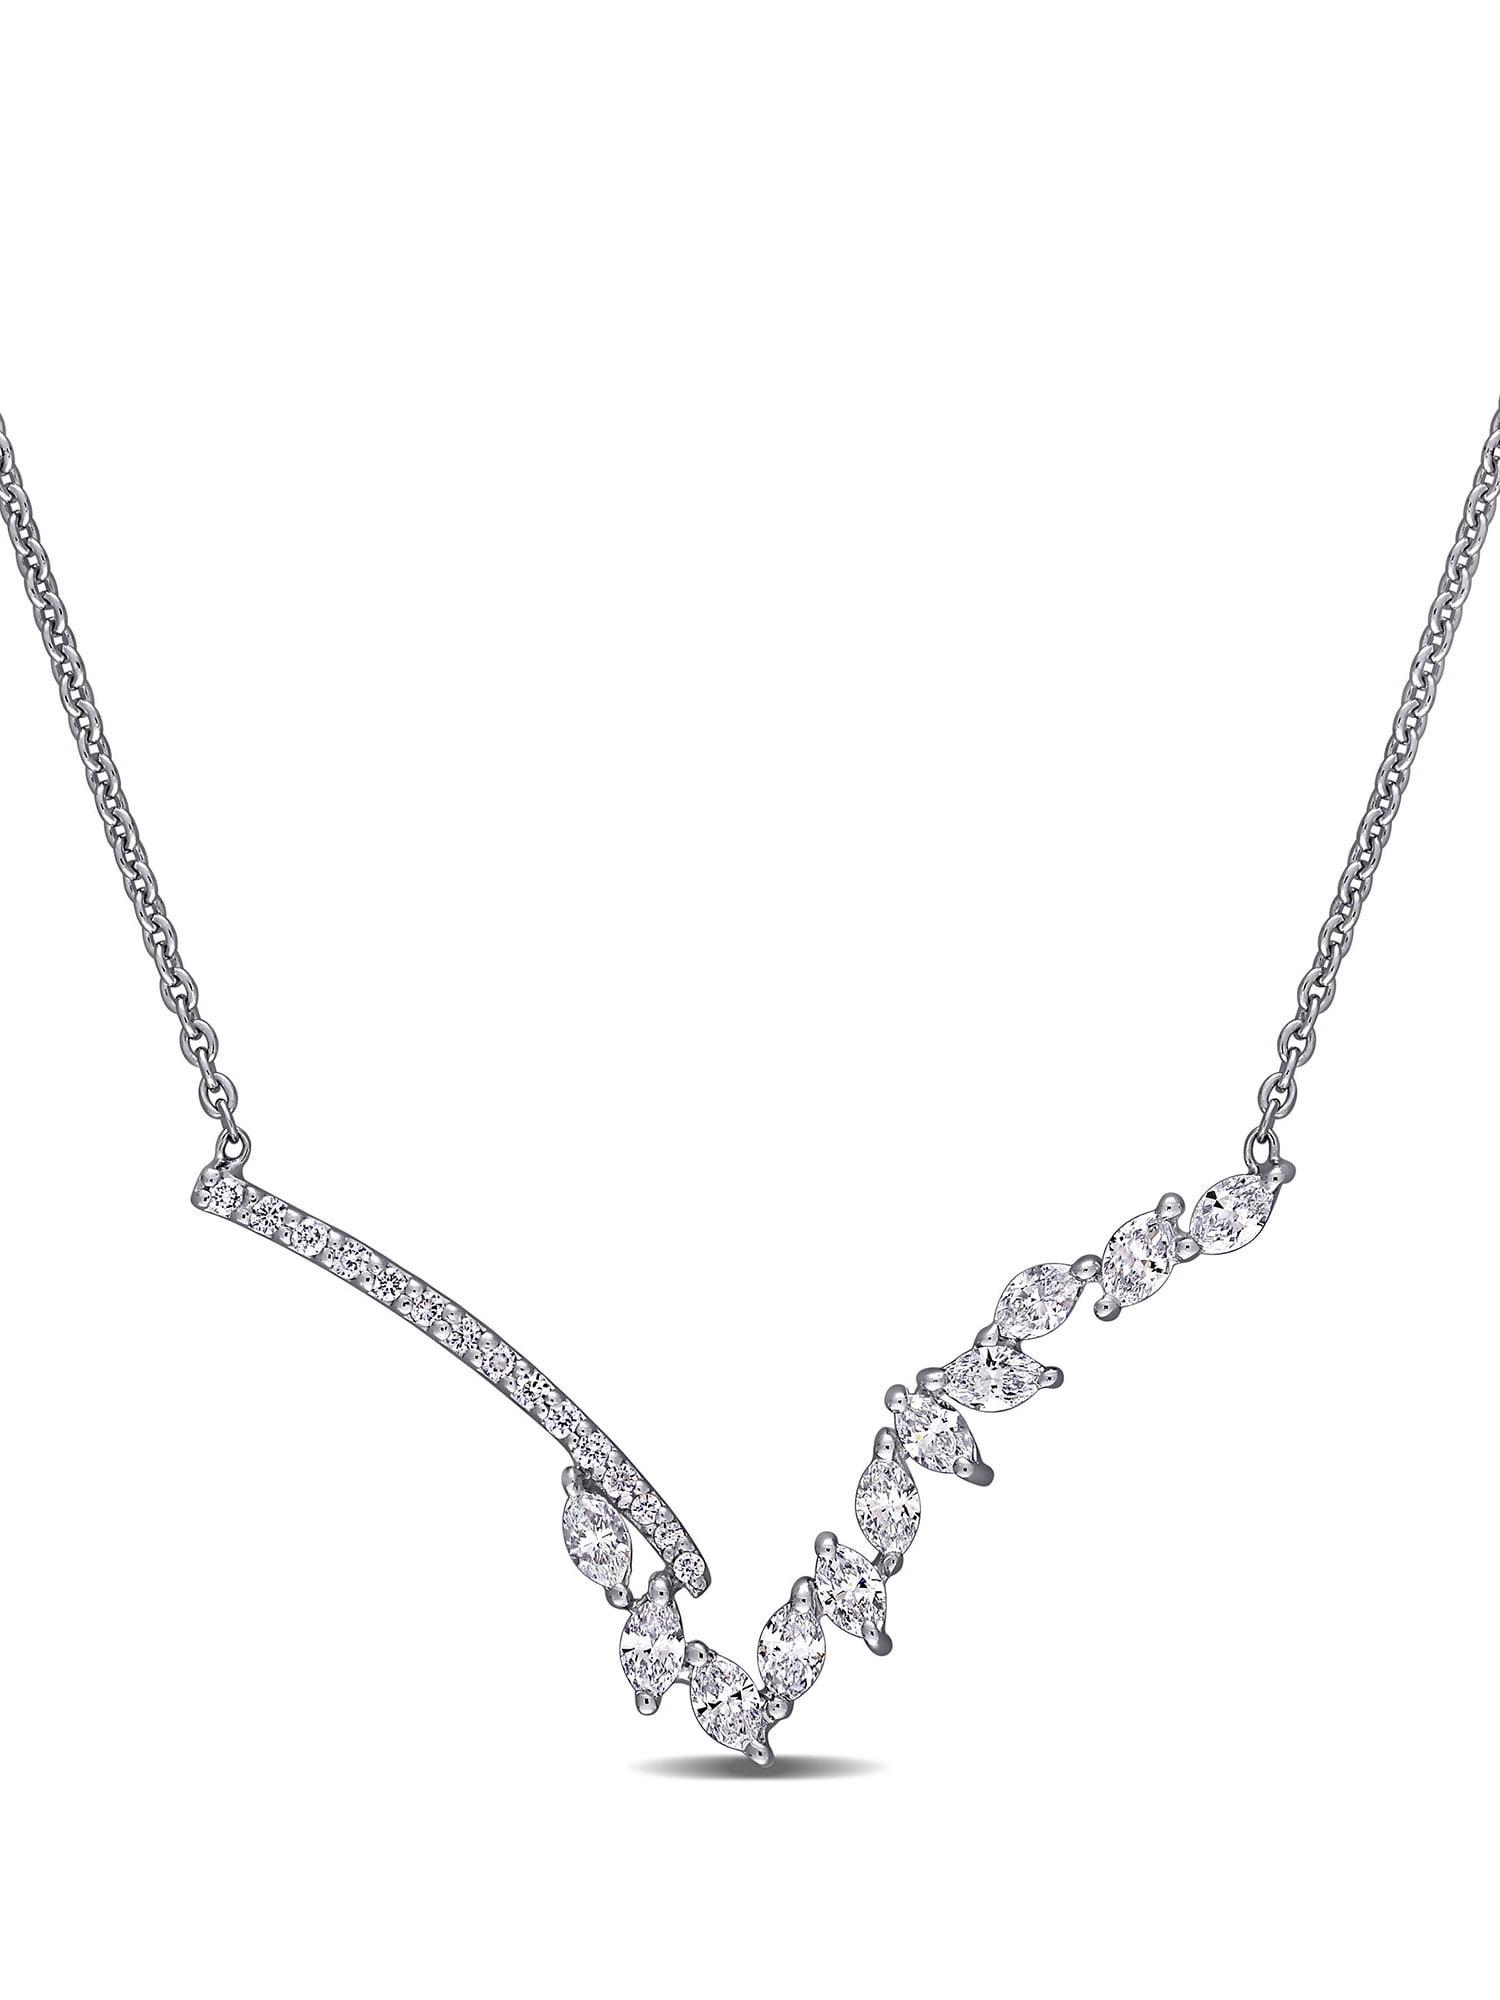 1/4 CT. T.W. Diamond Chevron Necklace in 10K White Gold|Zales | Chevron  necklace, White gold, Necklace